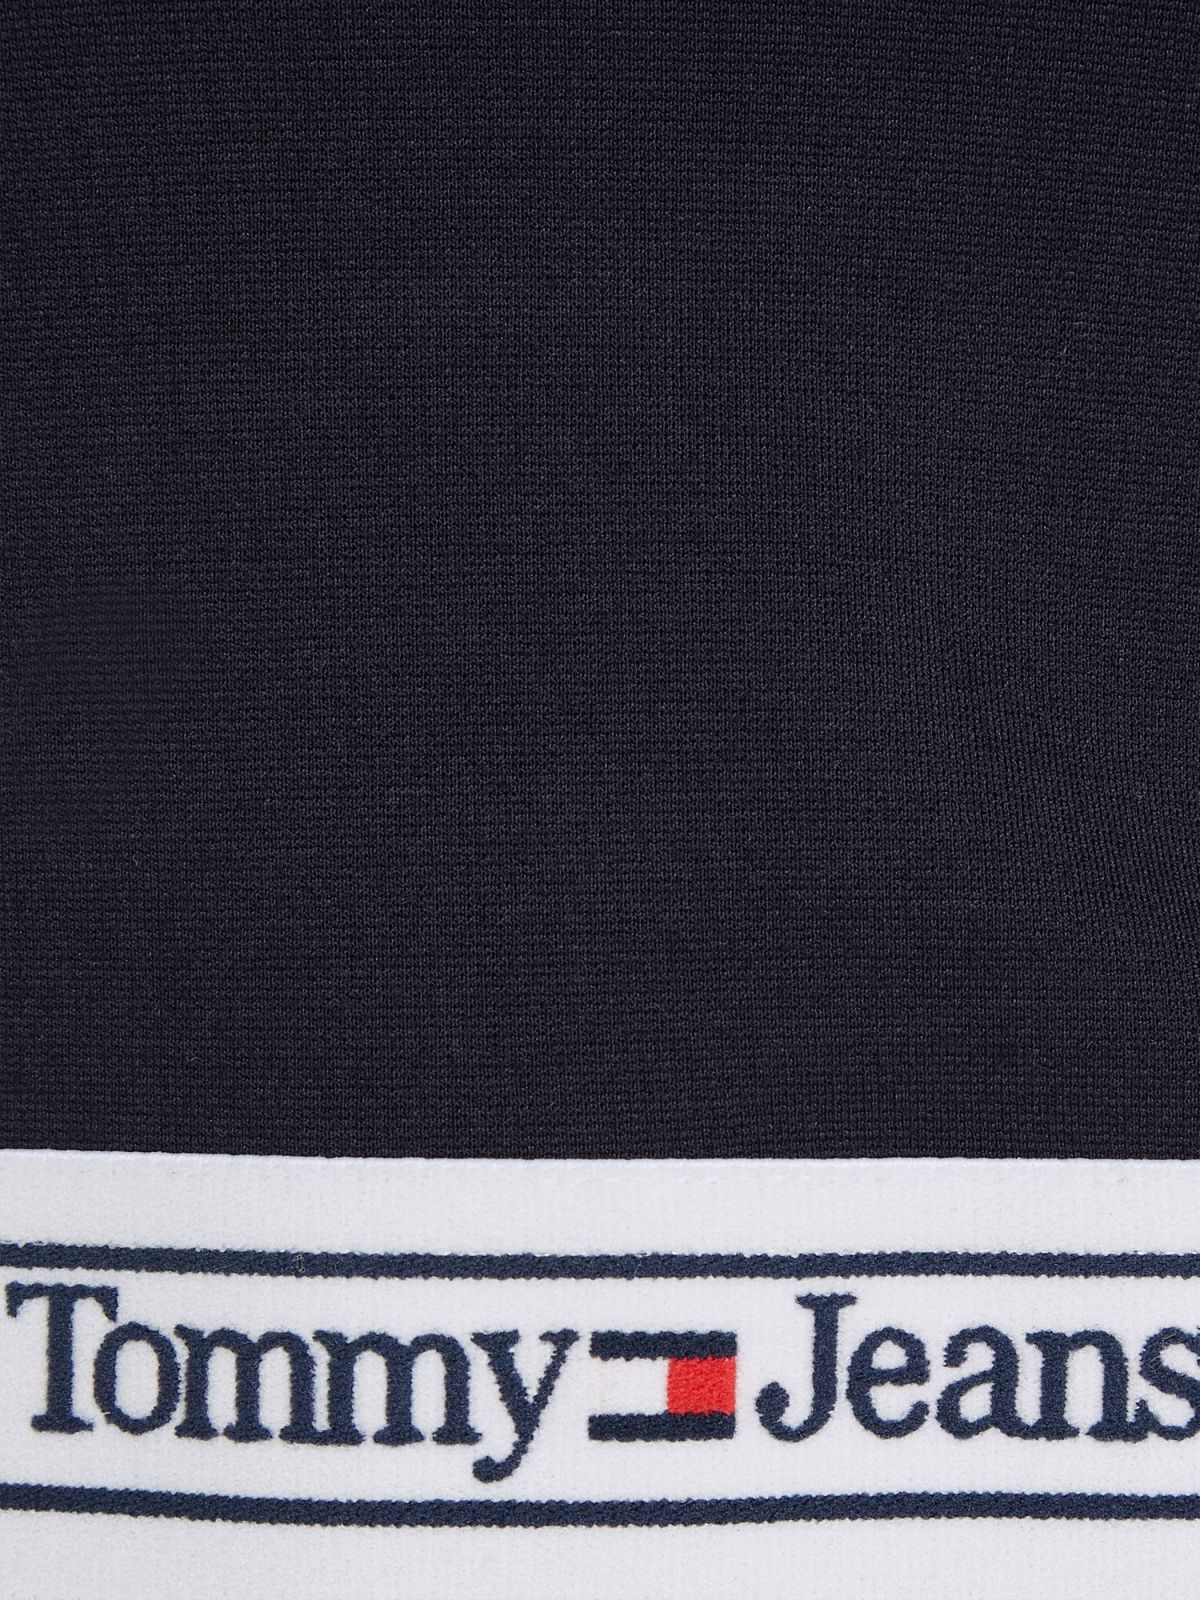  חולצת קרופ עם לוגו של TOMMY HILFIGER